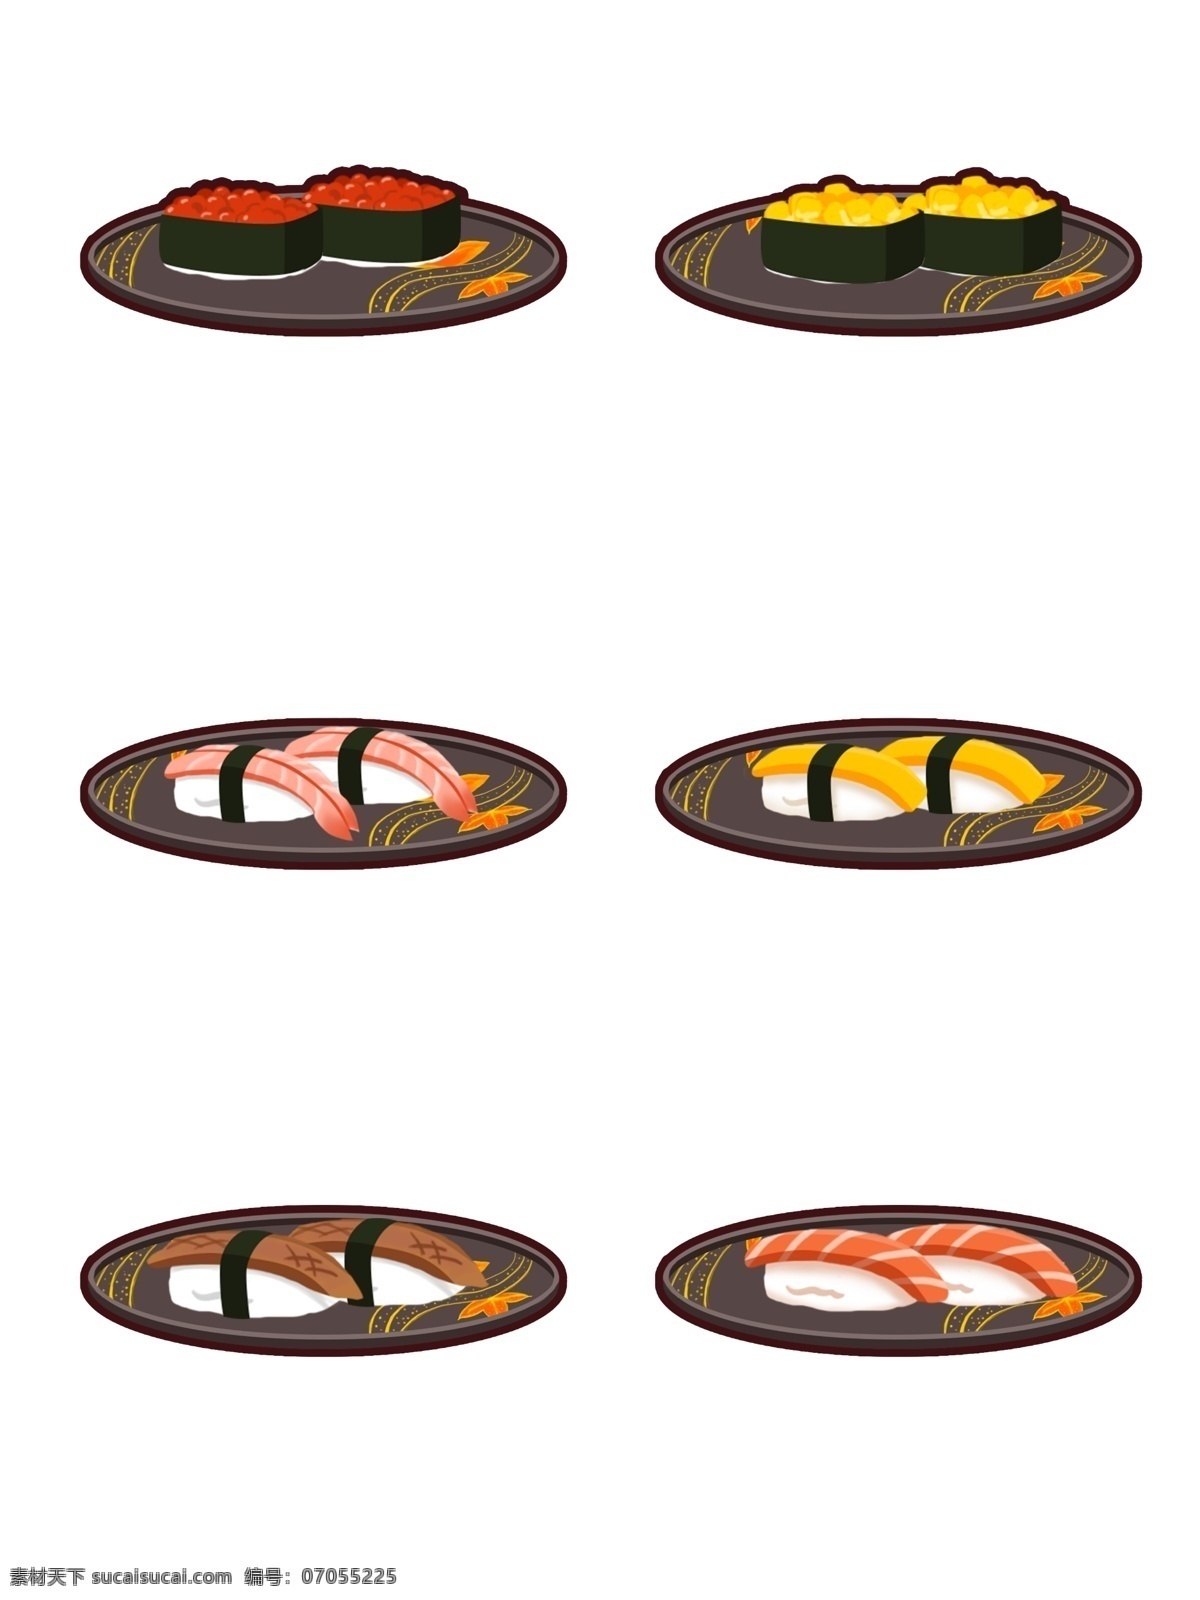 日式 寿司 食物 套 图 商用 鳗鱼寿司 三文鱼寿司 日本文化 卡通 日本 熟虾寿司 日本饮食 玉米寿司 鱼子寿司 玉烧寿司